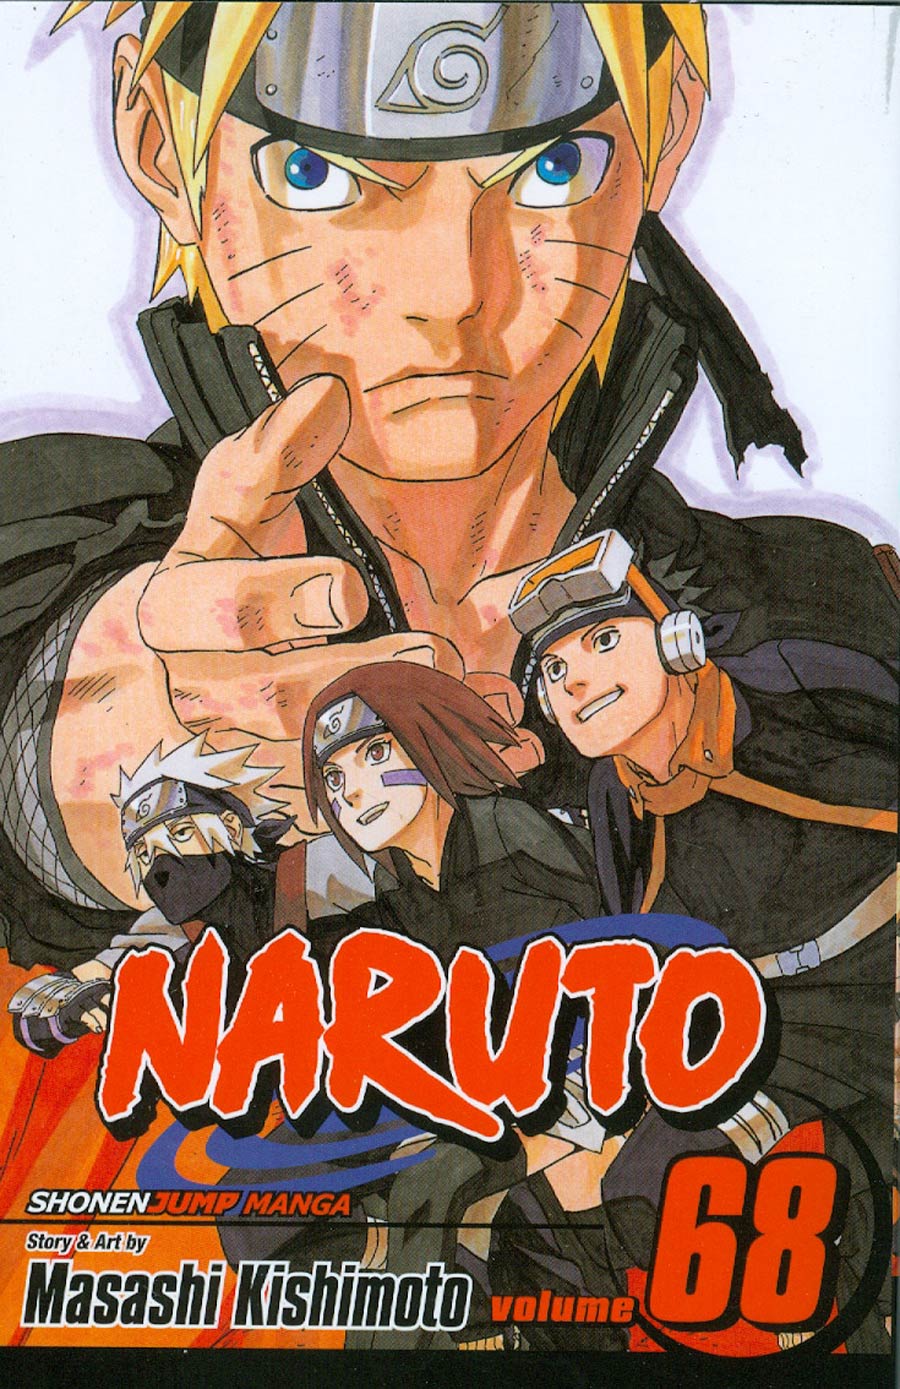 Naruto Vol 68 TP